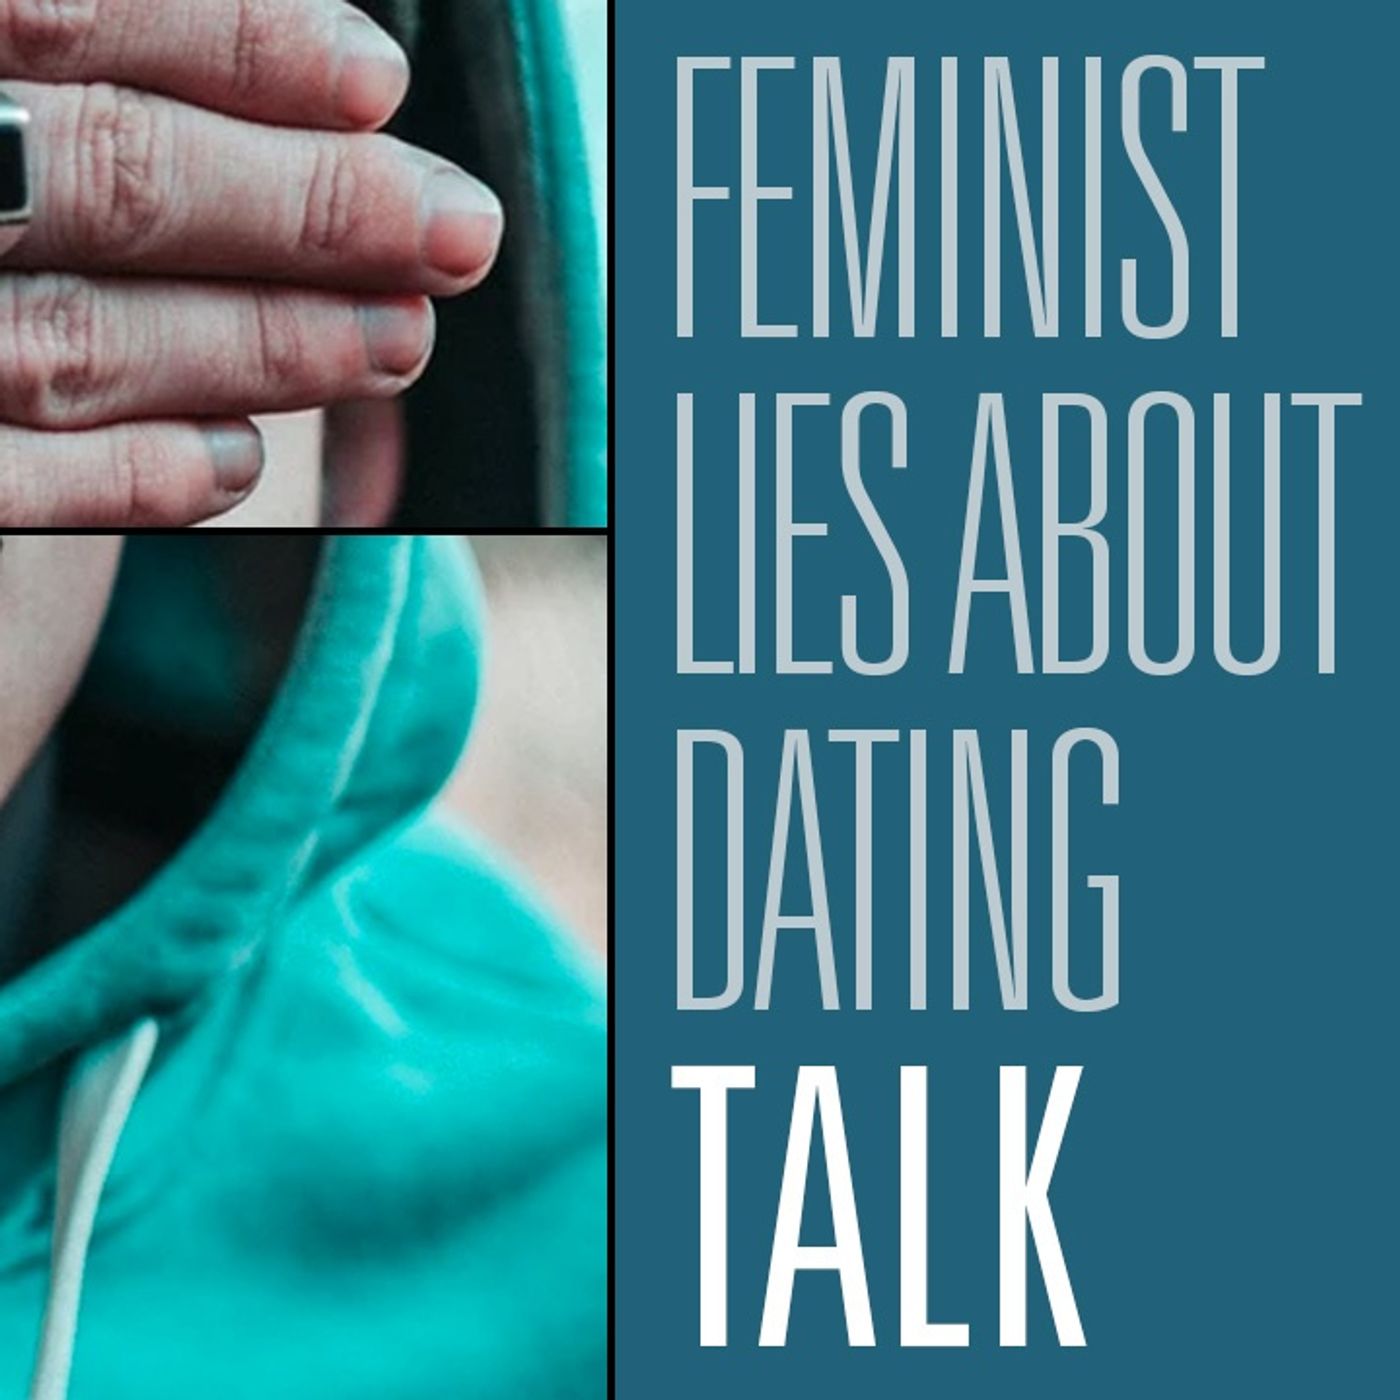 37 feminist lies about women's dating advice | HBR Talk 203